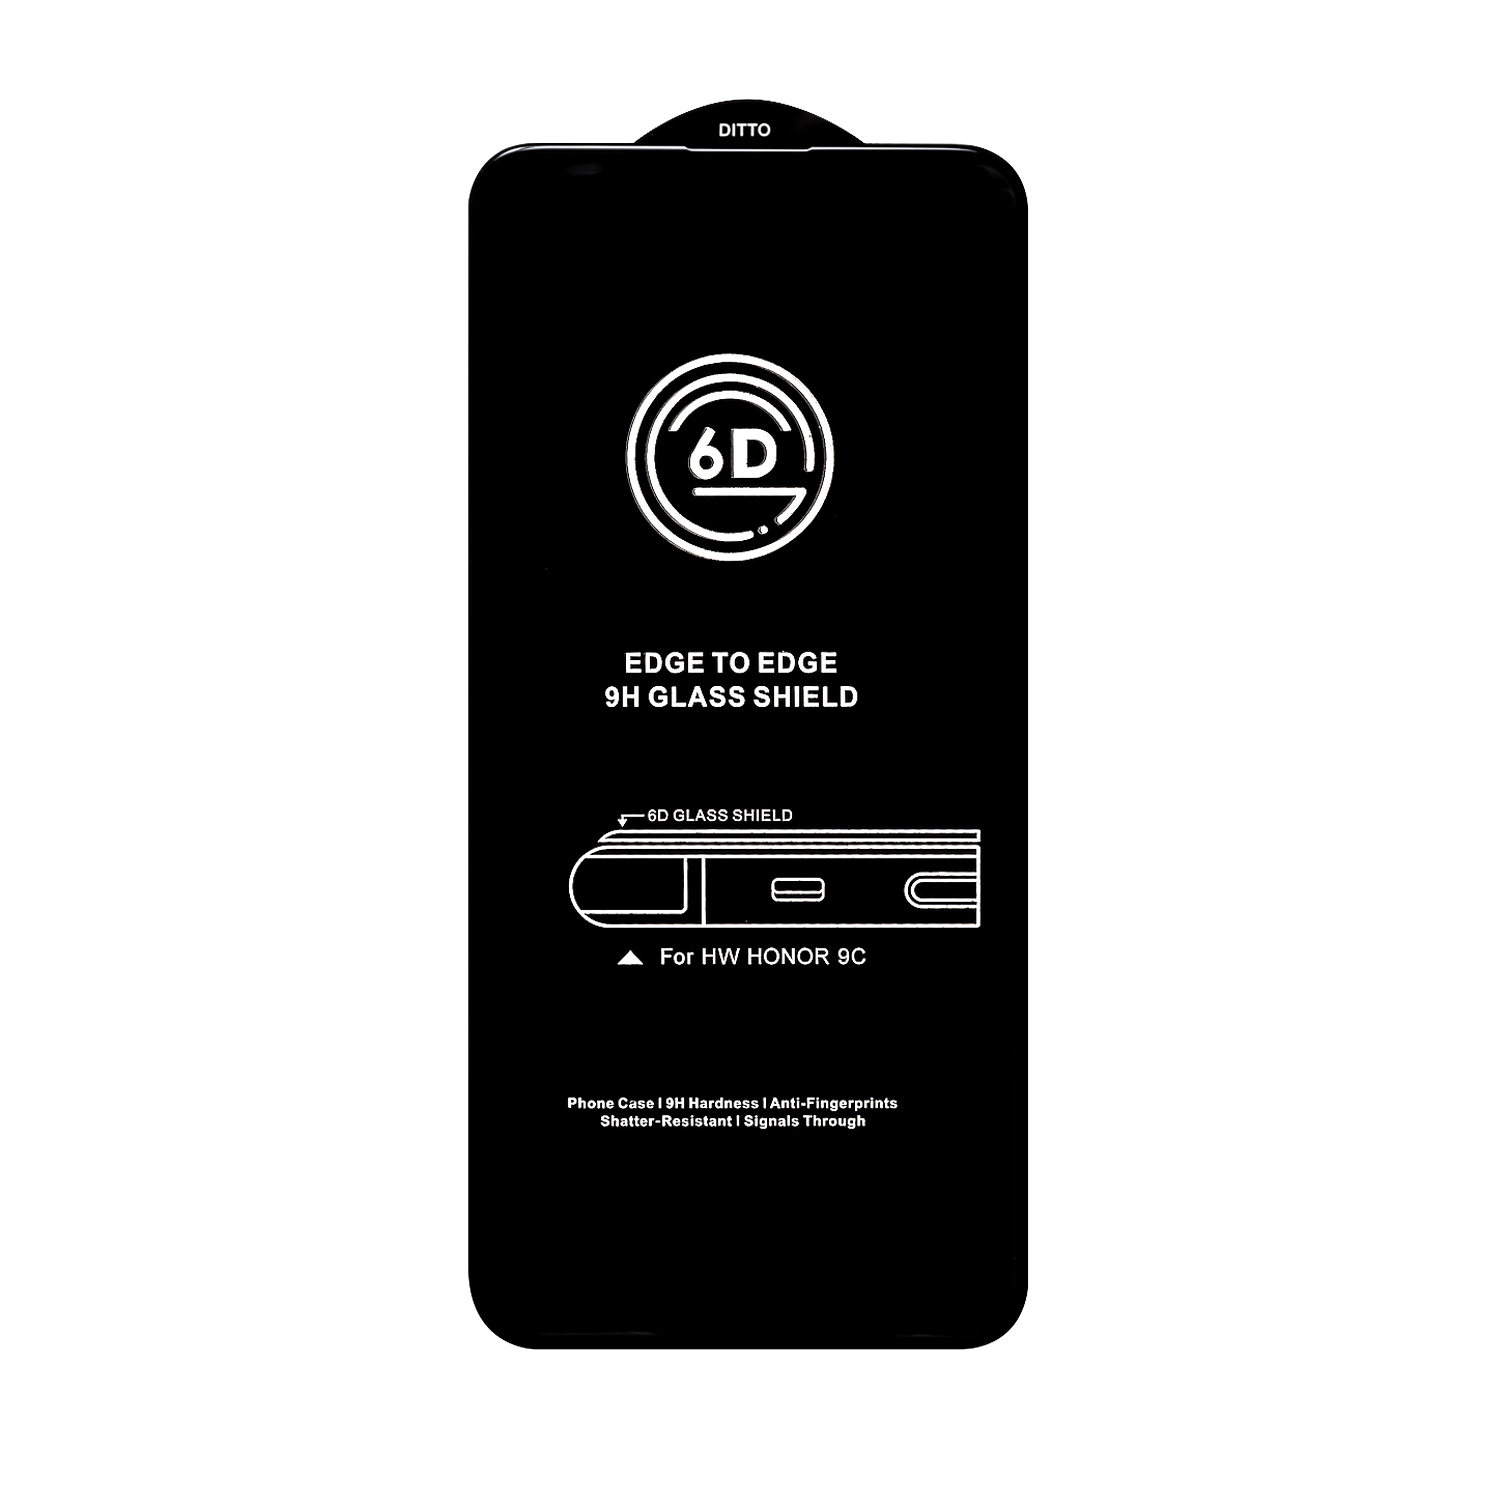 Защитное стекло Huawei P40 Lite/Honor 9C Black 6D без упаковки